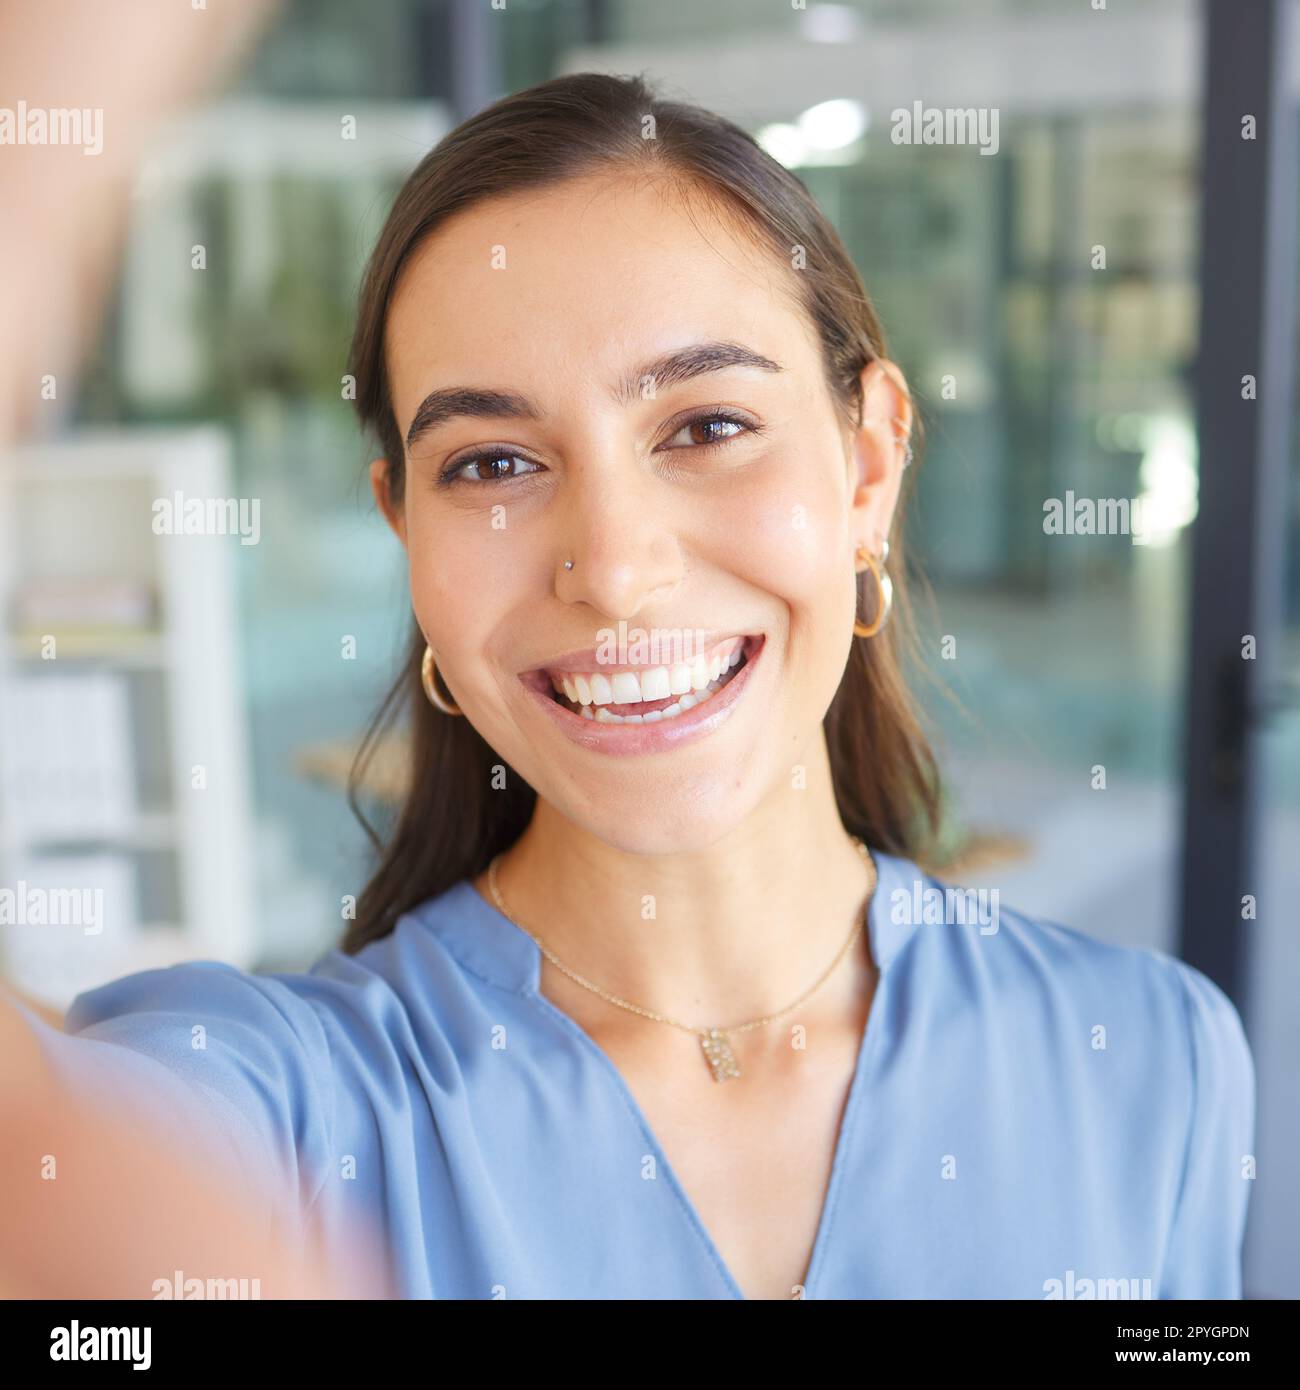 Felice, ritrattista o donna d'affari che scatta un selfie nell'edificio di uffici per una foto del profilo dei social media e sorride con orgoglio. Volto, foto o manager con obiettivi, mentalità di successo o motivazione al lavoro Foto Stock